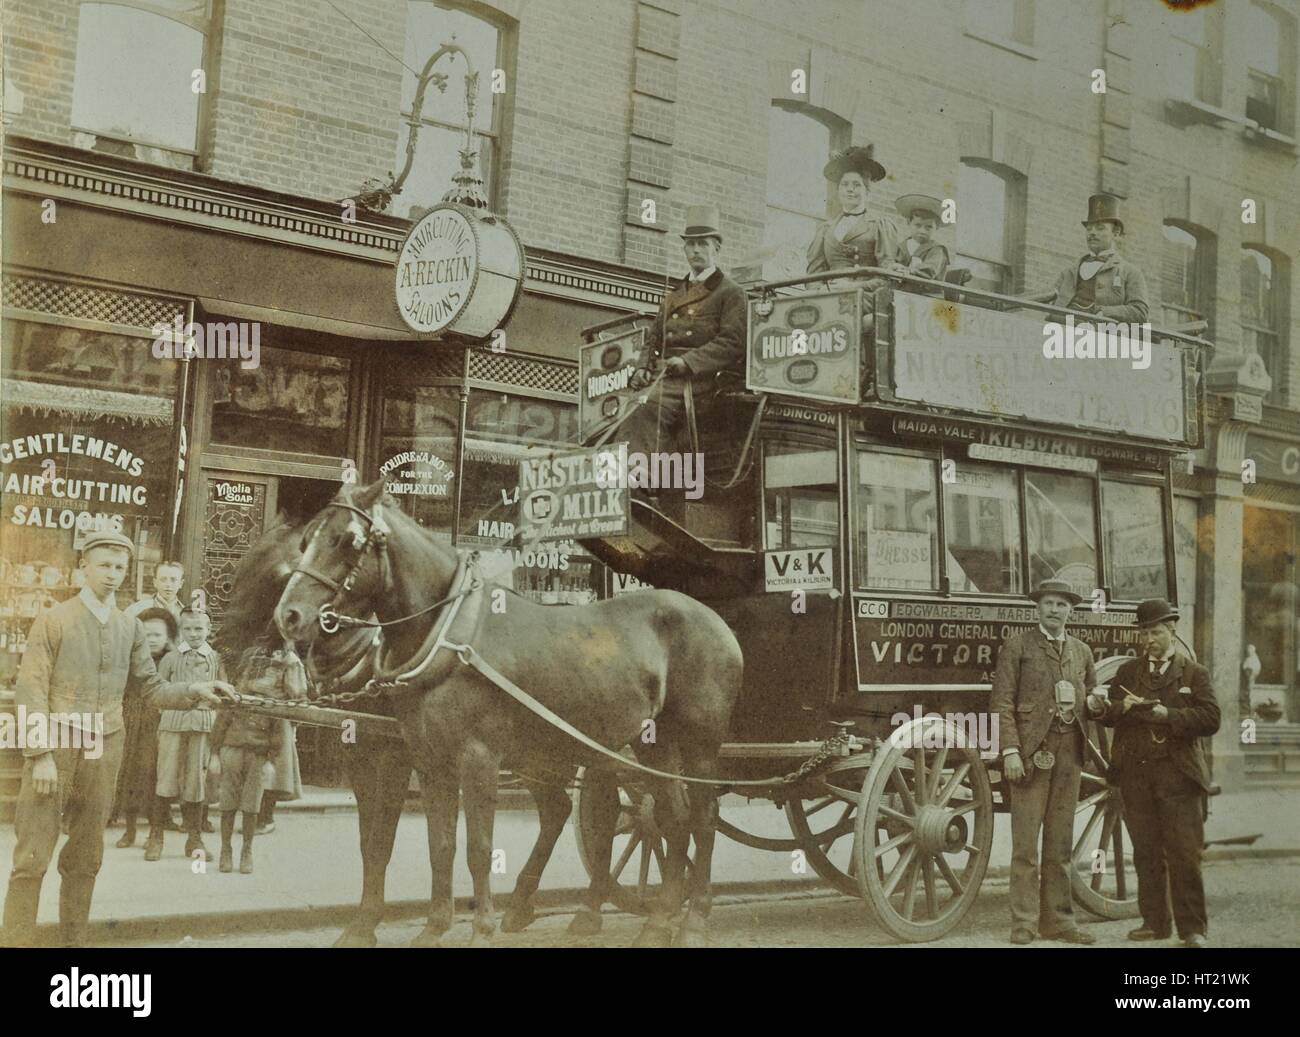 Pferdekutsche-Omnibus und Passagiere, London, 1900. Künstler: unbekannt. Stockfoto